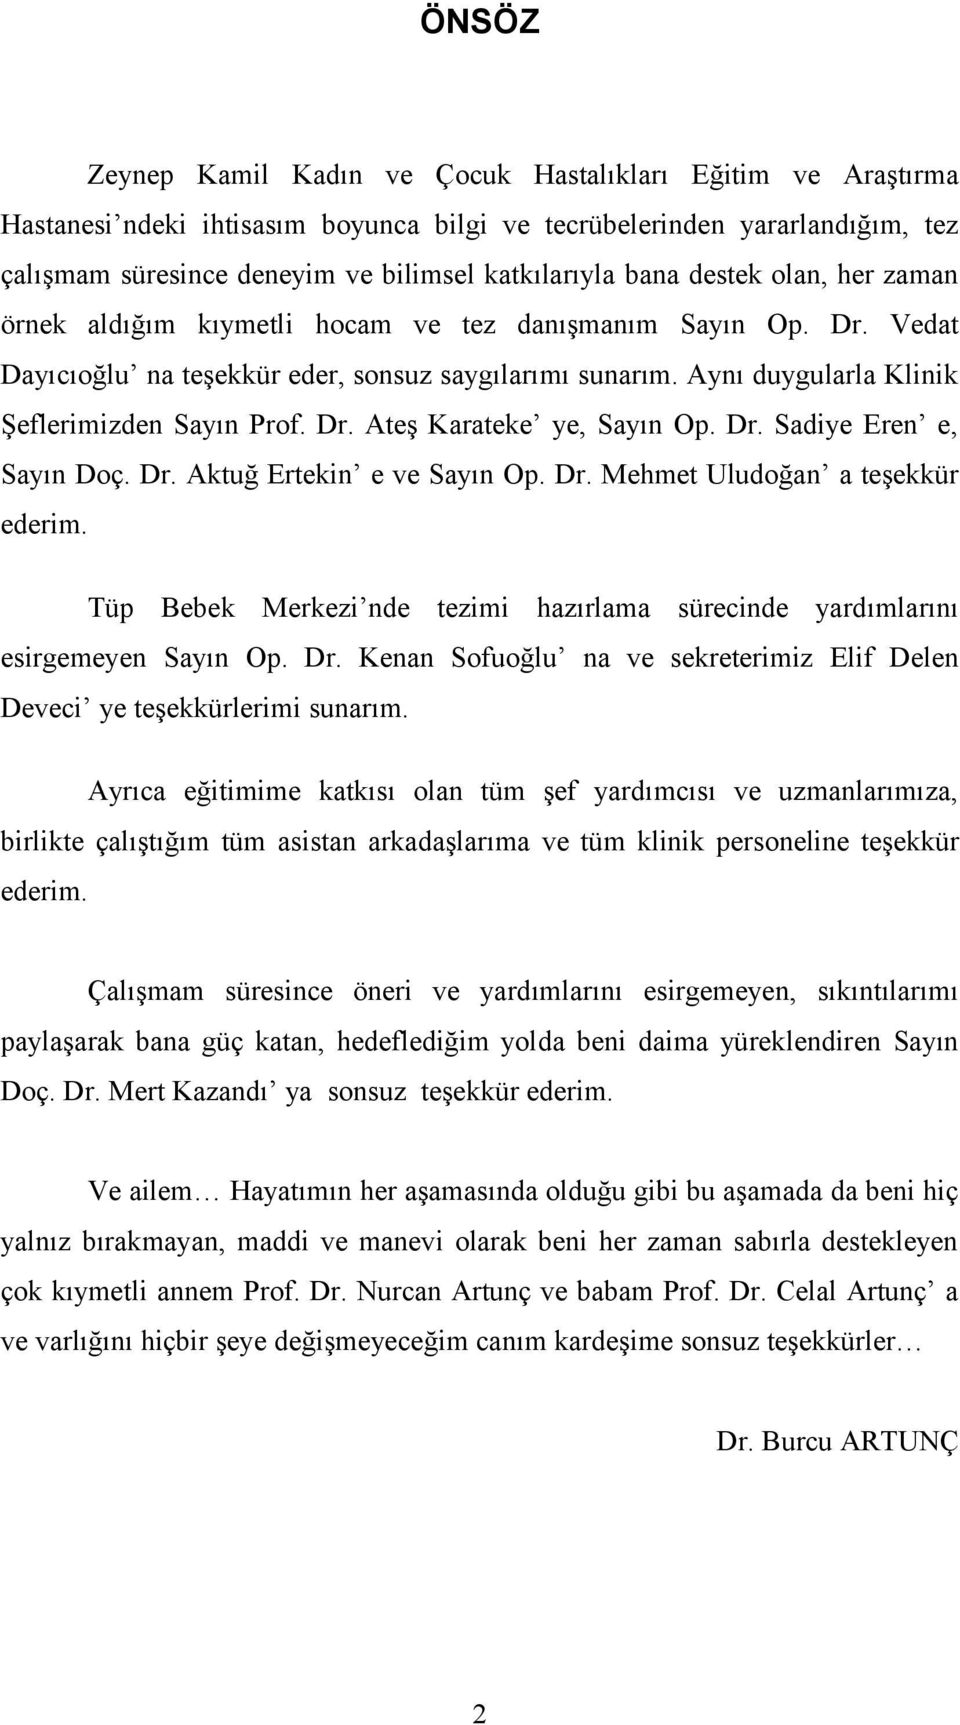 Dr. Ateş Karateke ye, Sayın Op. Dr. Sadiye Eren e, Sayın Doç. Dr. Aktuğ Ertekin e ve Sayın Op. Dr. Mehmet Uludoğan a teşekkür ederim.